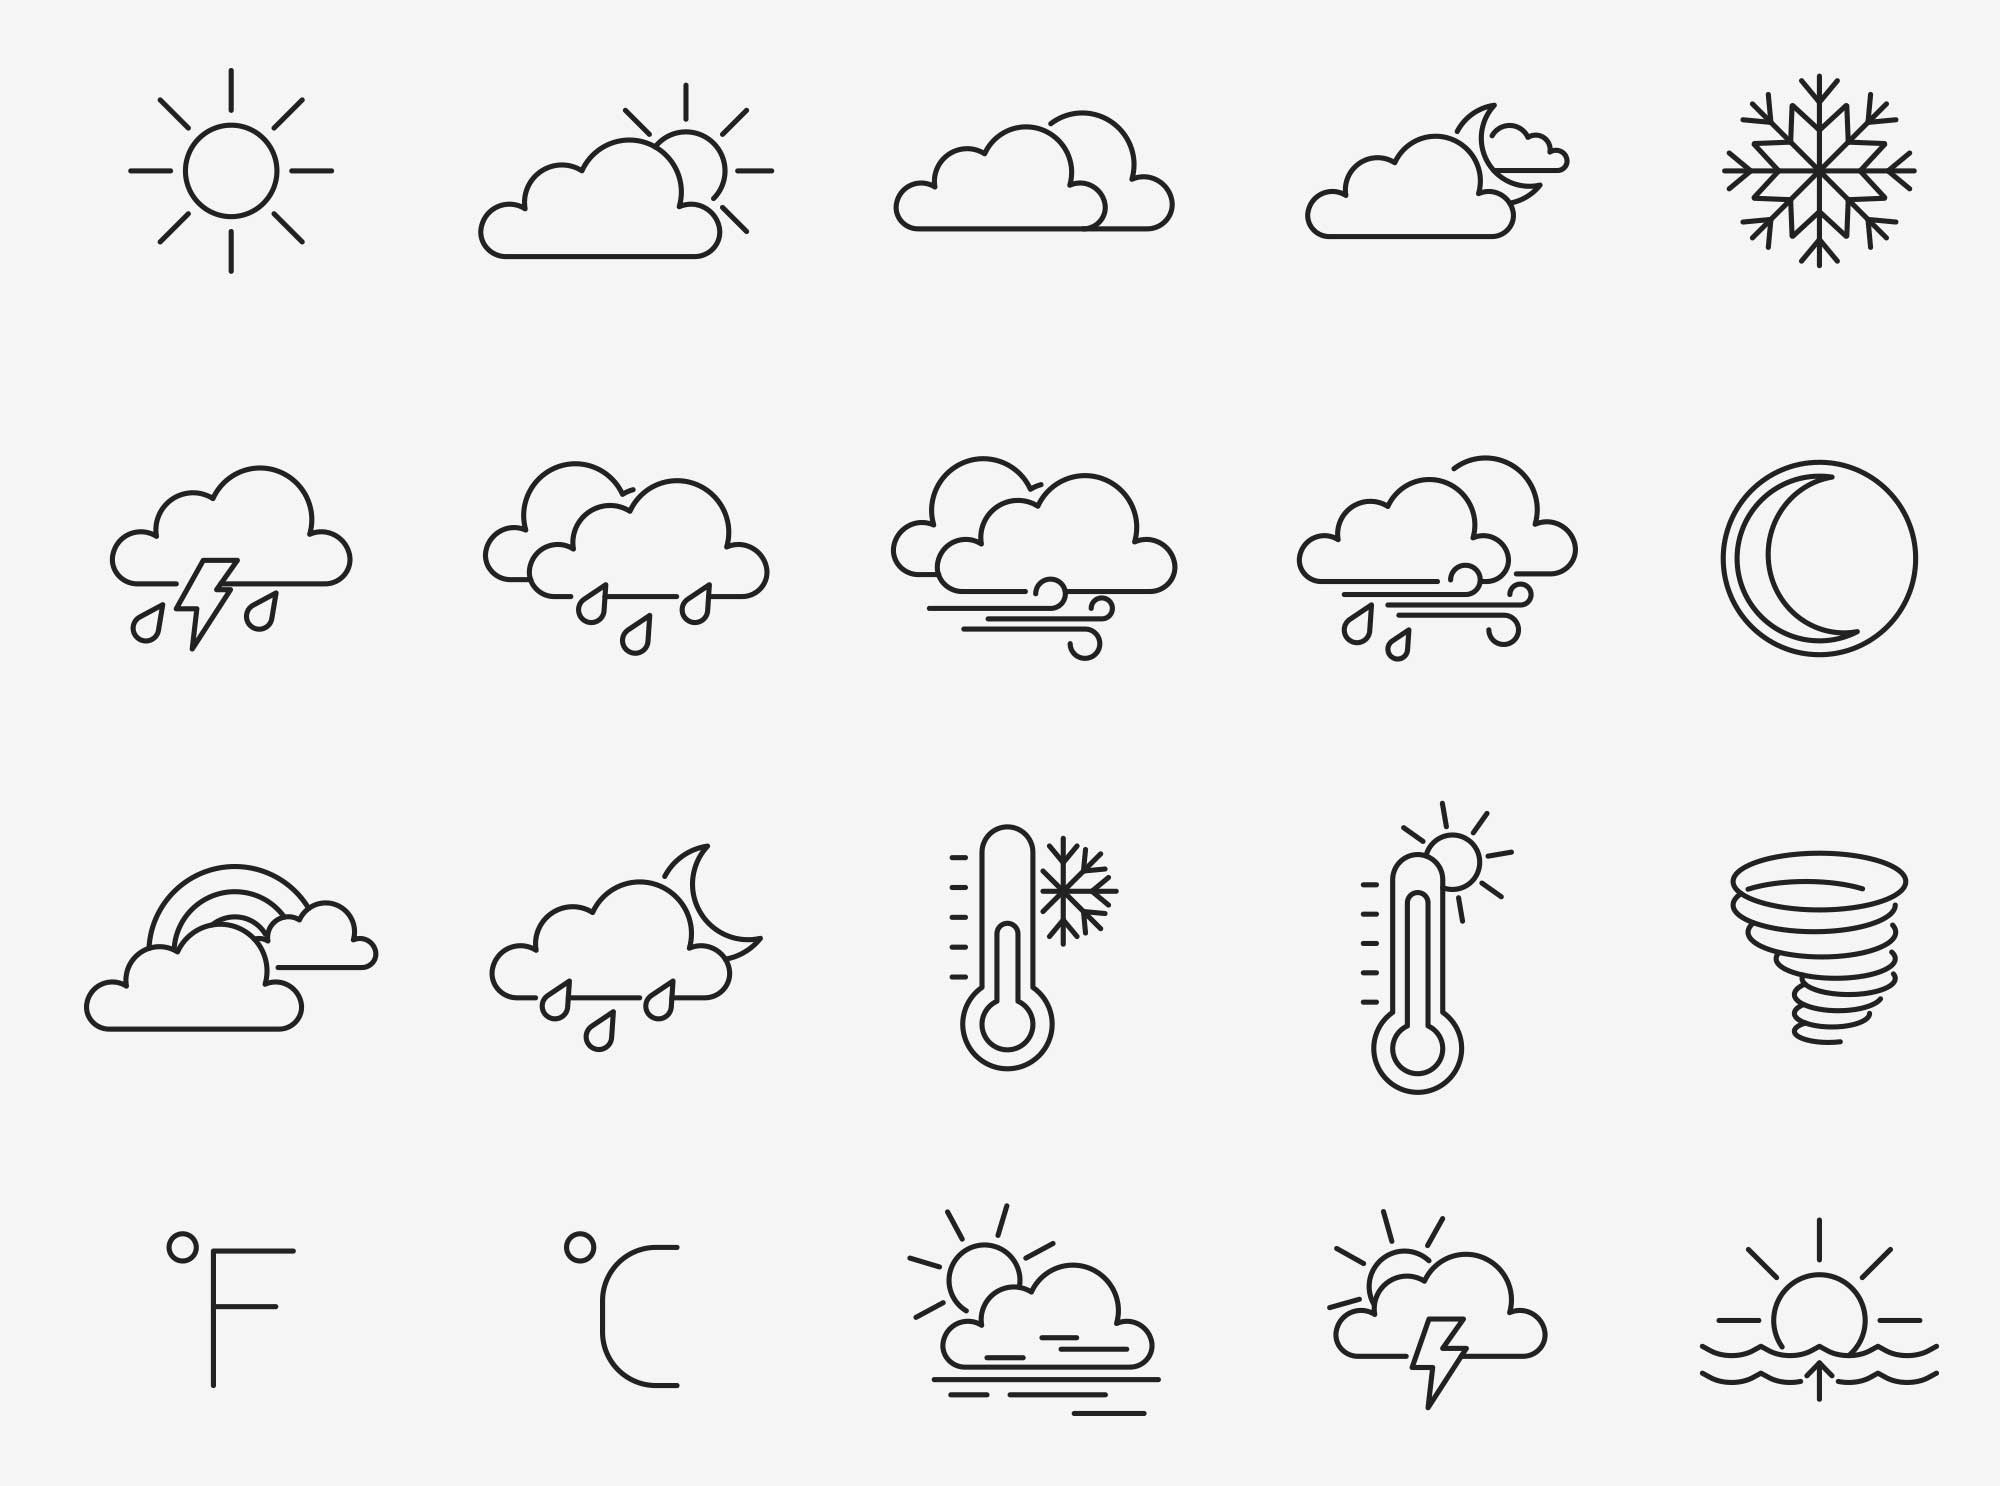 80个天气矢量图标 80 Weather Vector Icons 图标素材 第3张